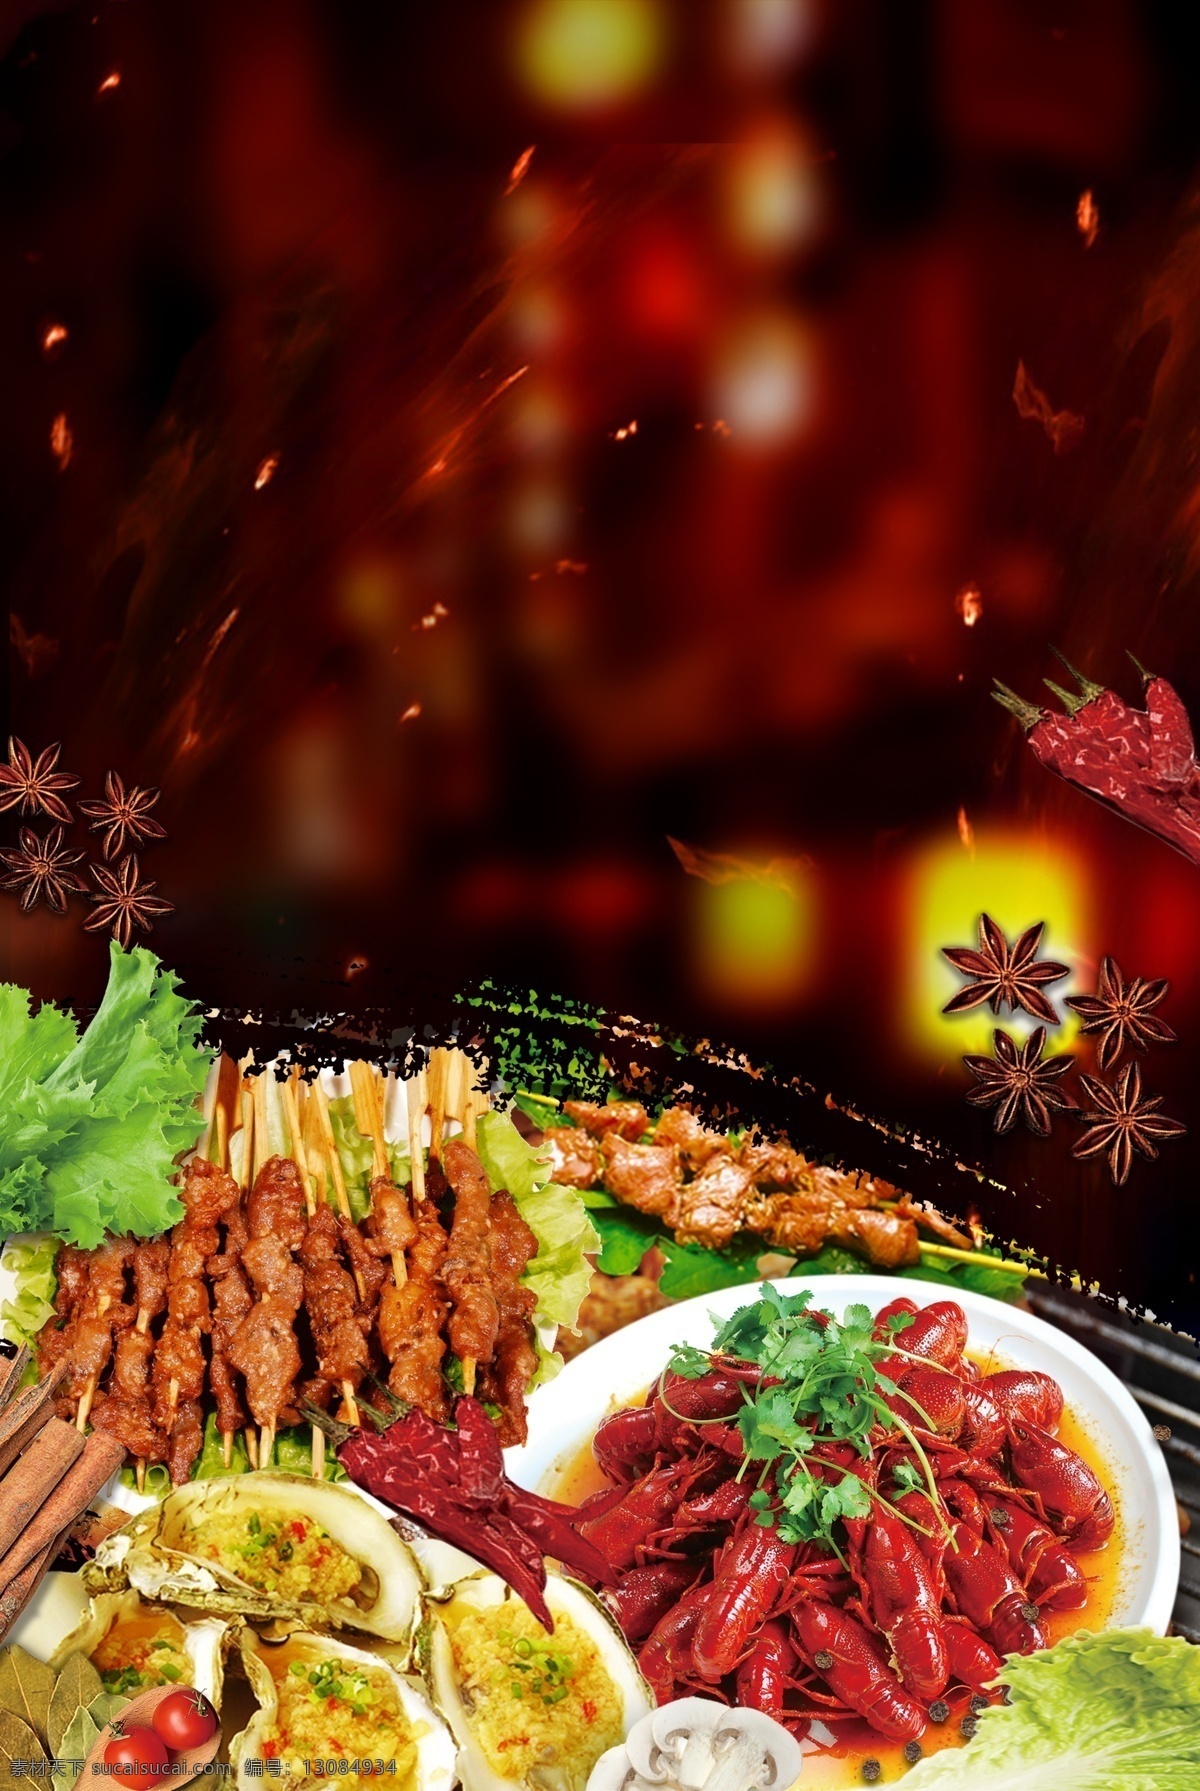 烧烤图片 中华美食 传统美食 烤肉 羊肉串 烤肉串 小龙虾 生活百科 餐饮美食